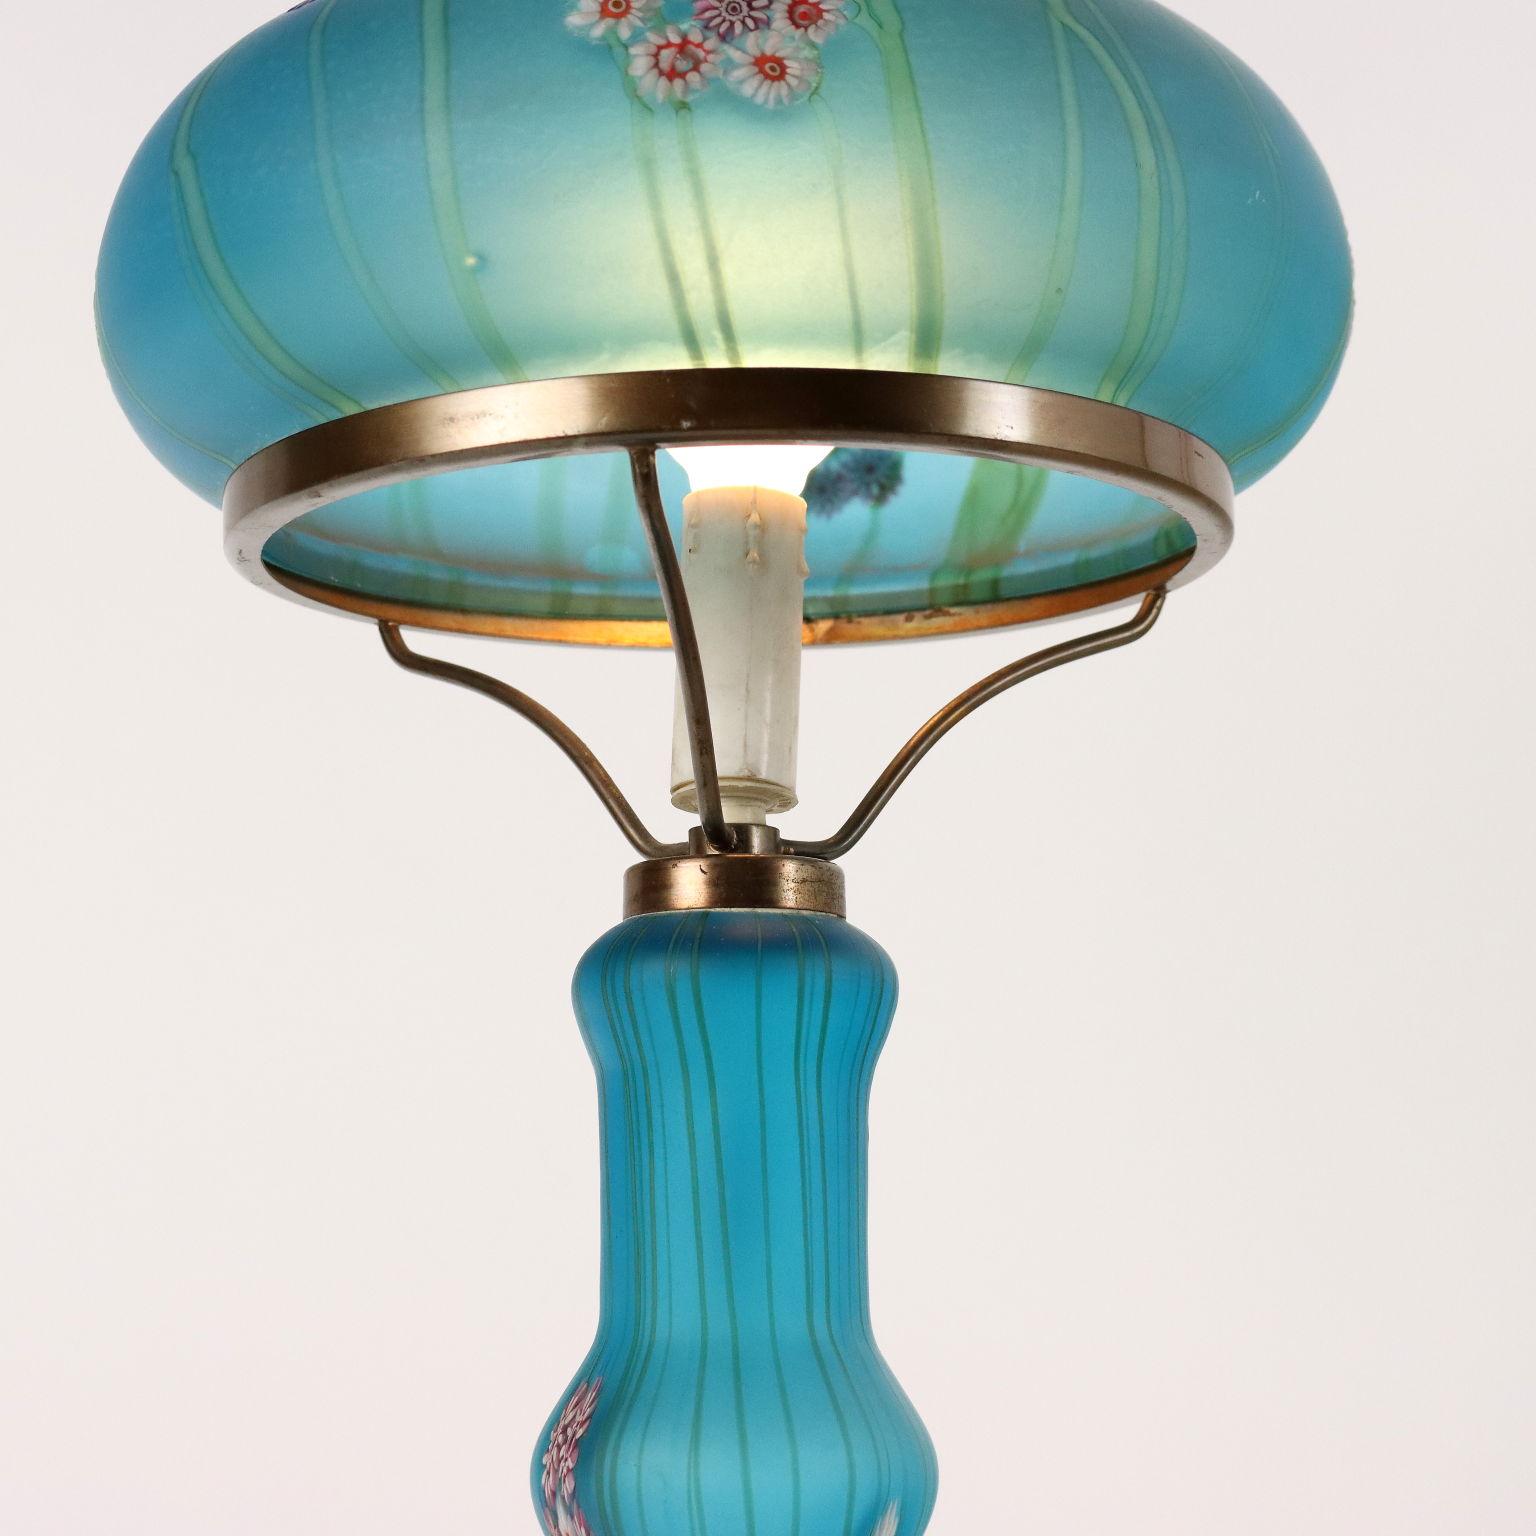 Italian Millefiori Fratelli Toso Murano 1950s Table Lamp For Sale